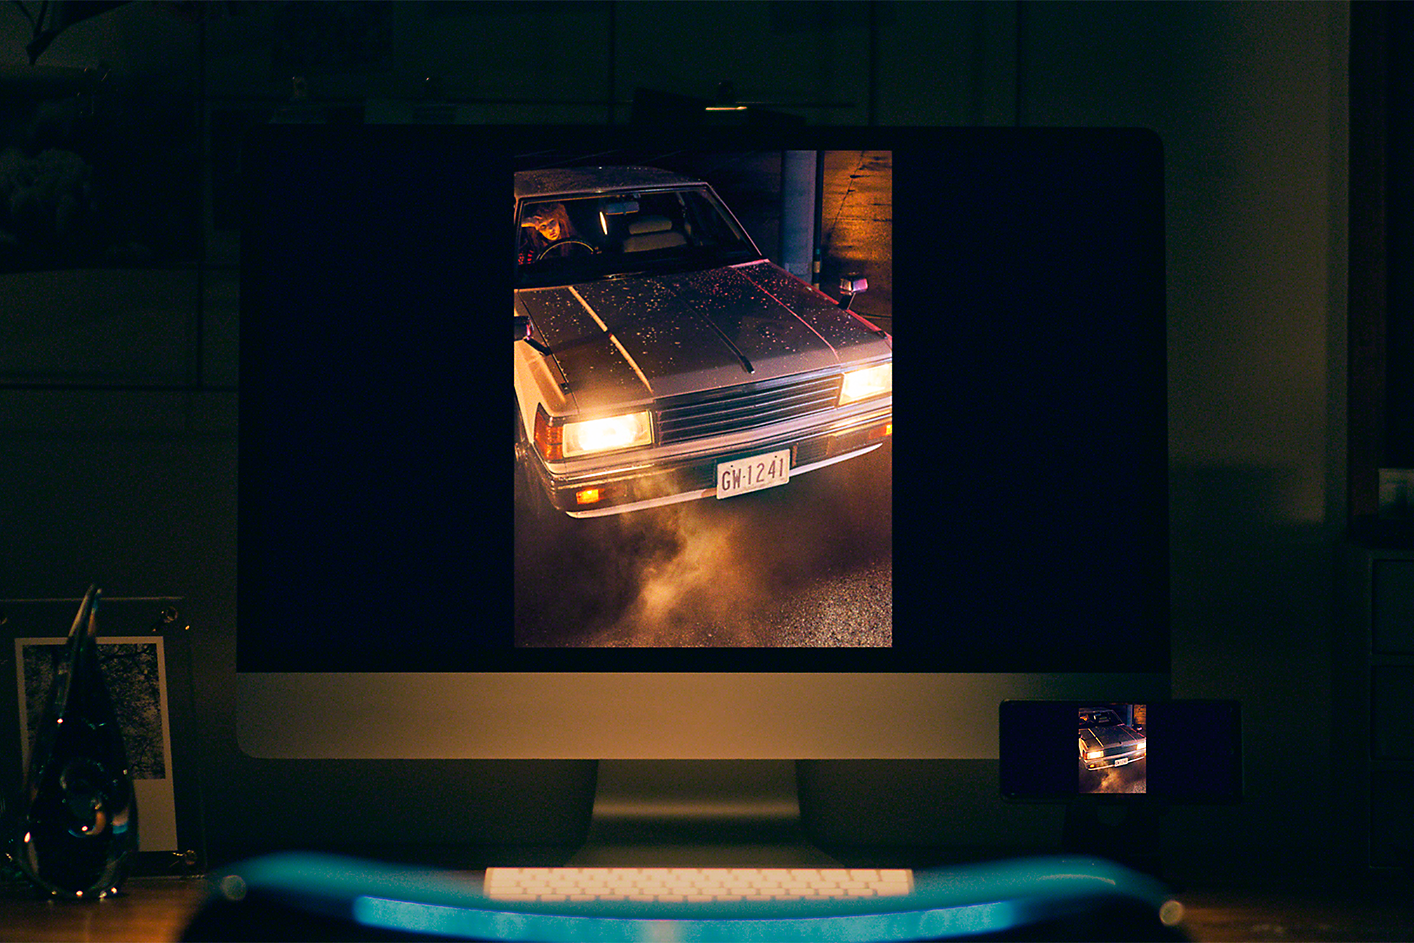 Stolní počítač se snímkem automobilu s rozsvícenými předními světly pořízeným za slabého osvětlení